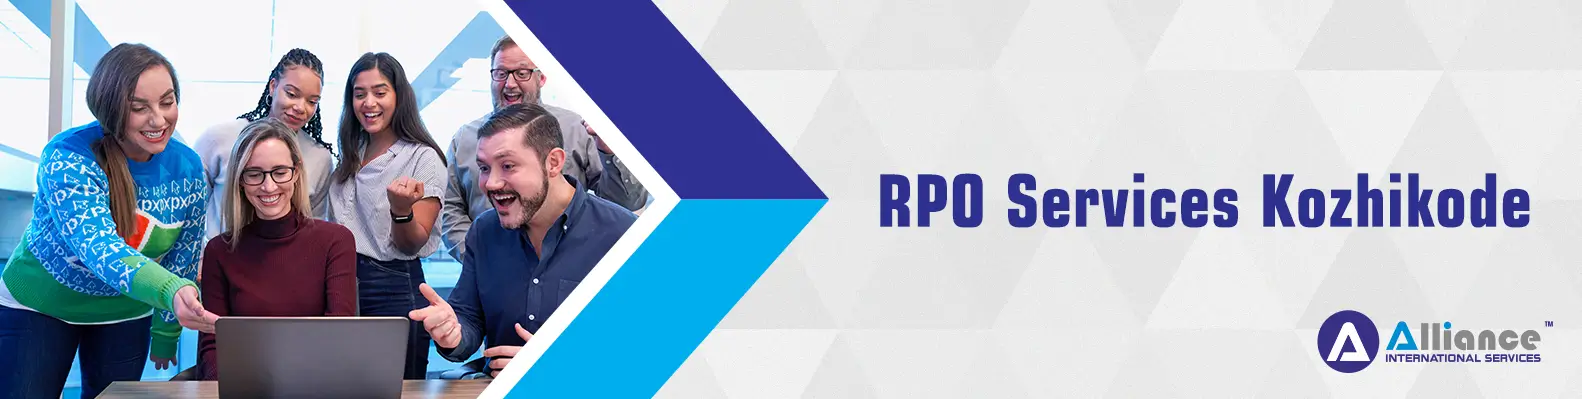 RPO Services Kozhikode